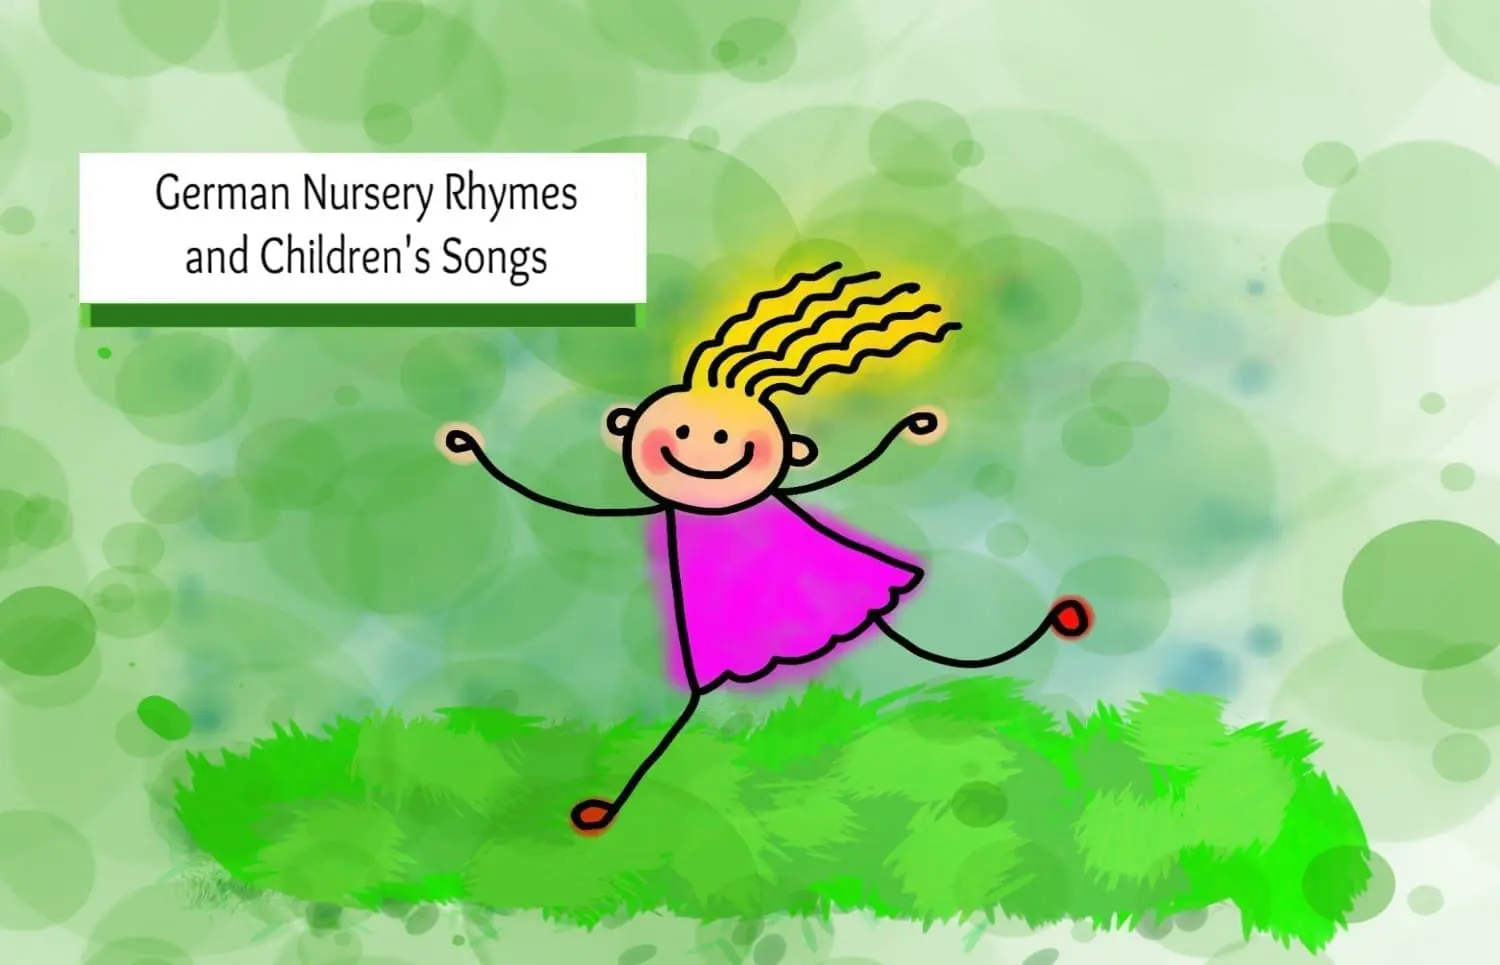 German Nursery Rhymes and Children’s Songs